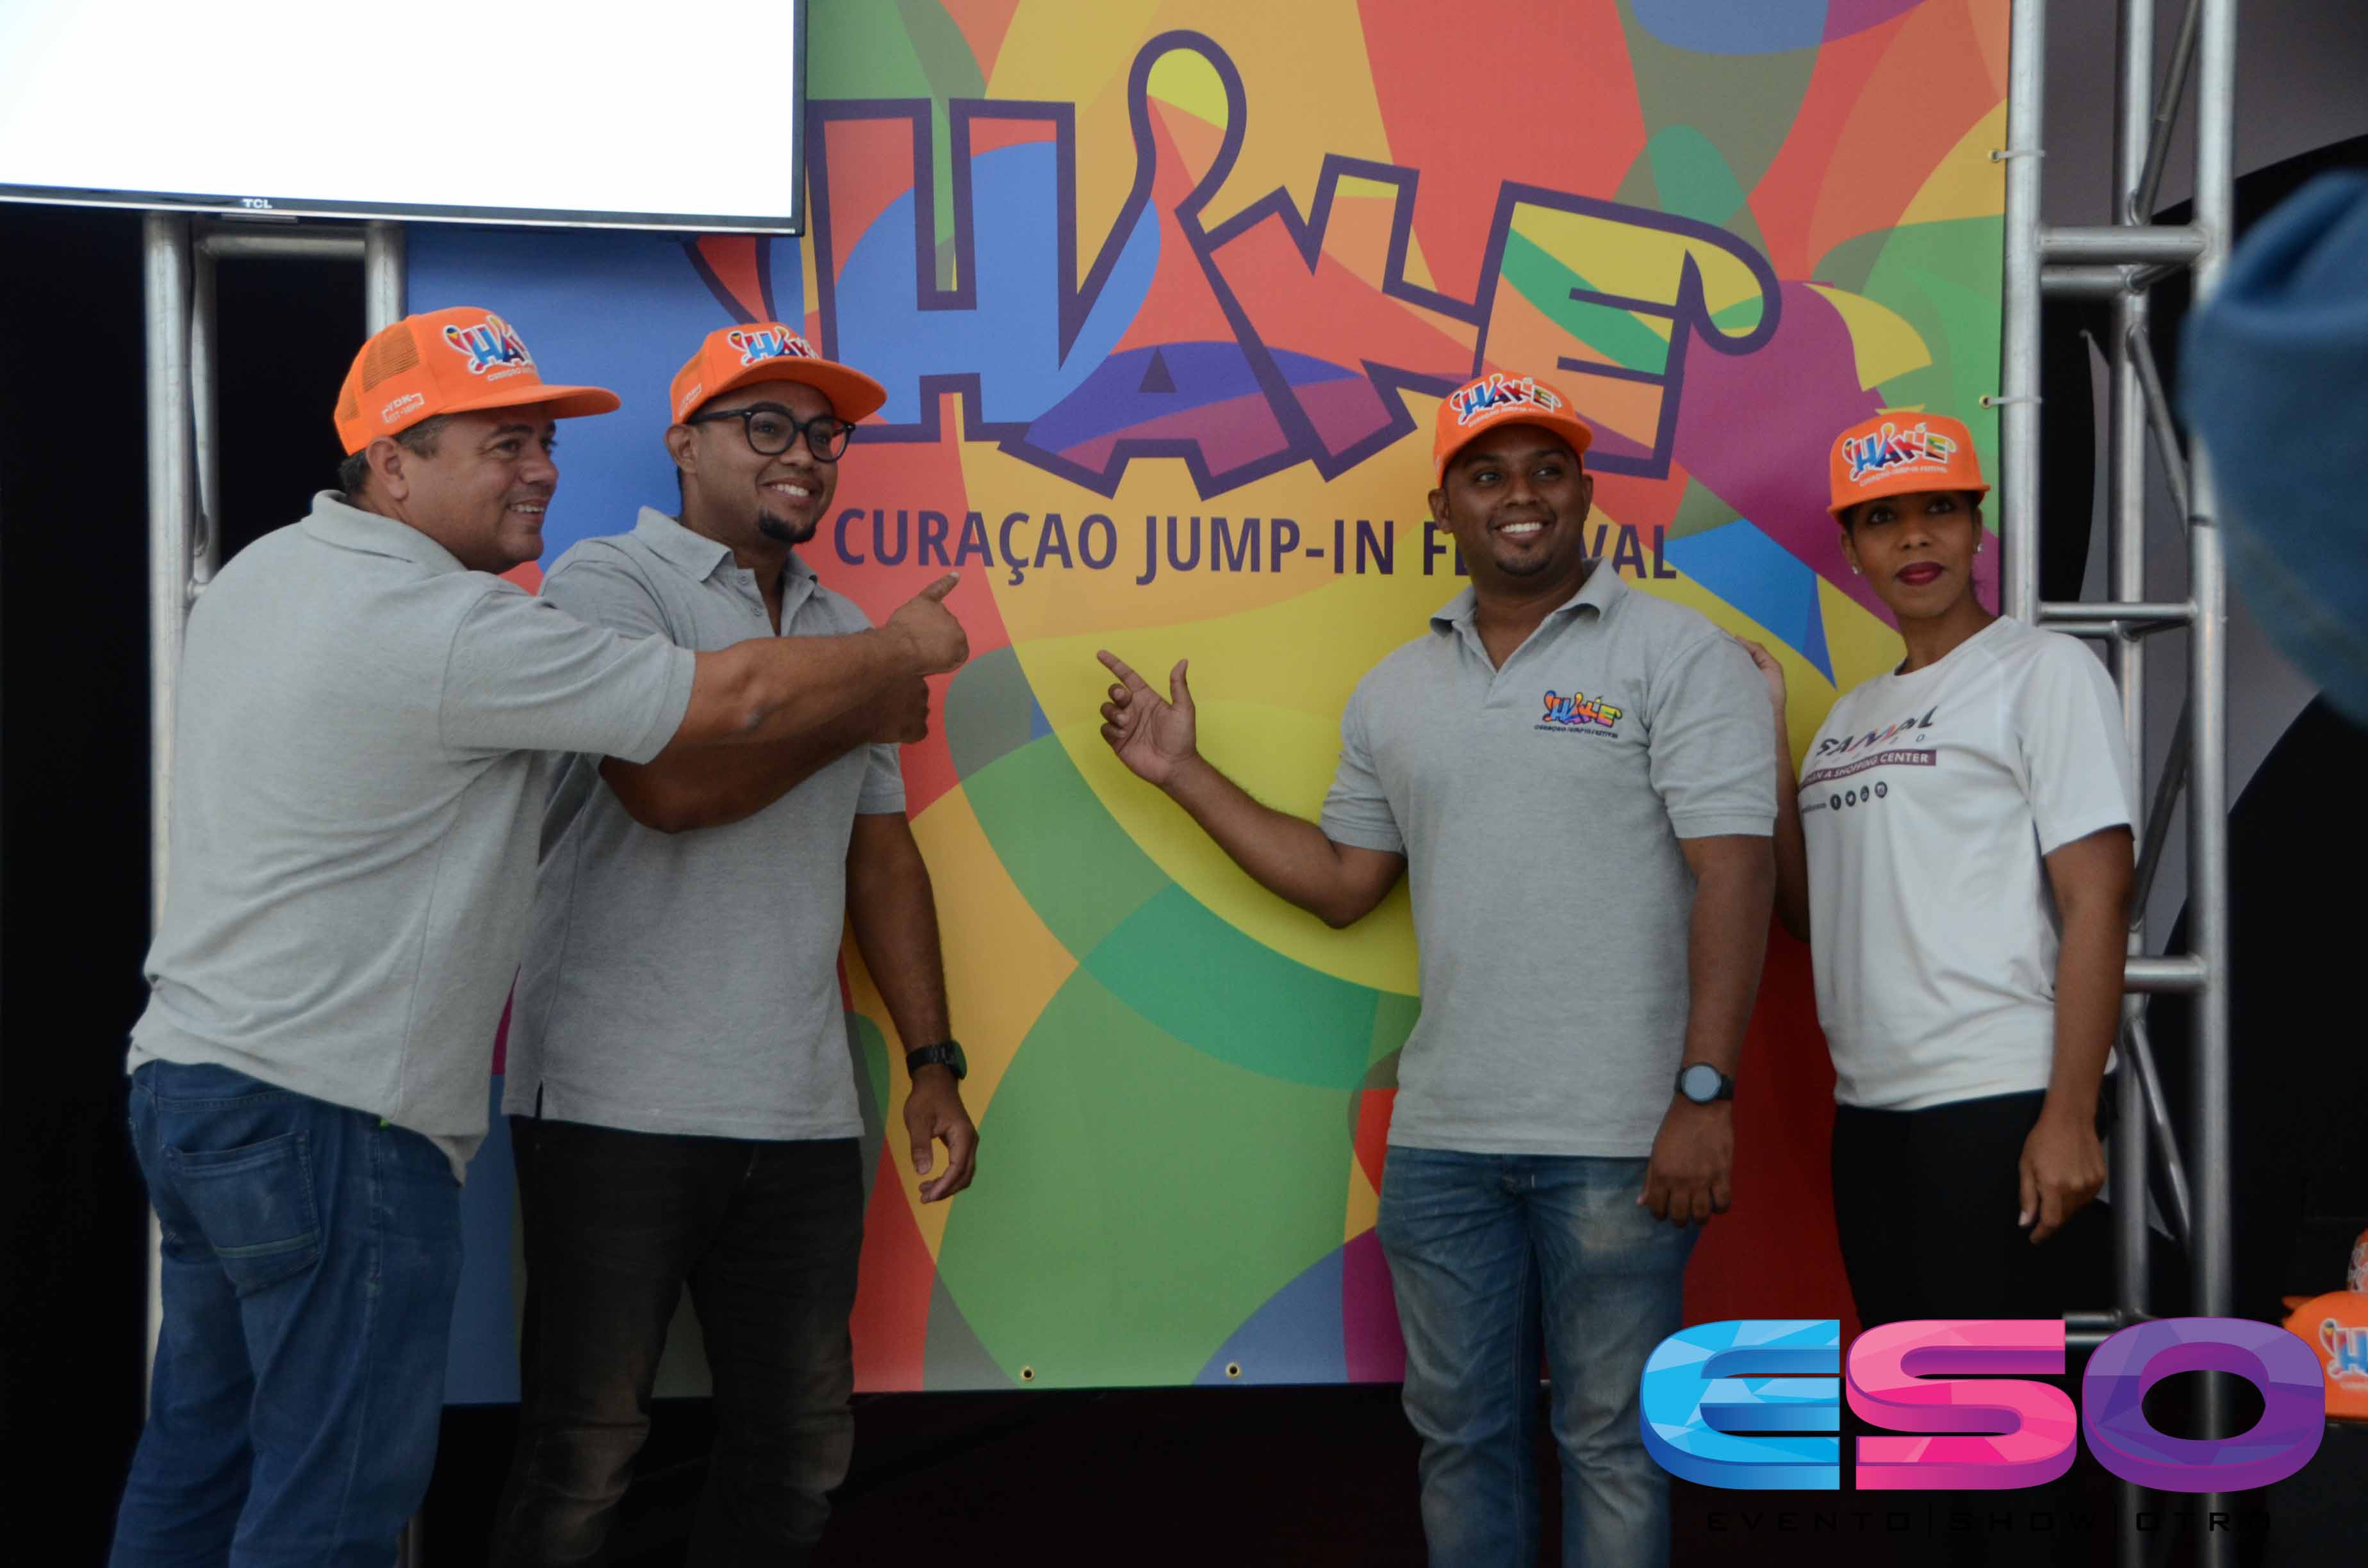 HAK’E Curacao Jump In Festival 2017